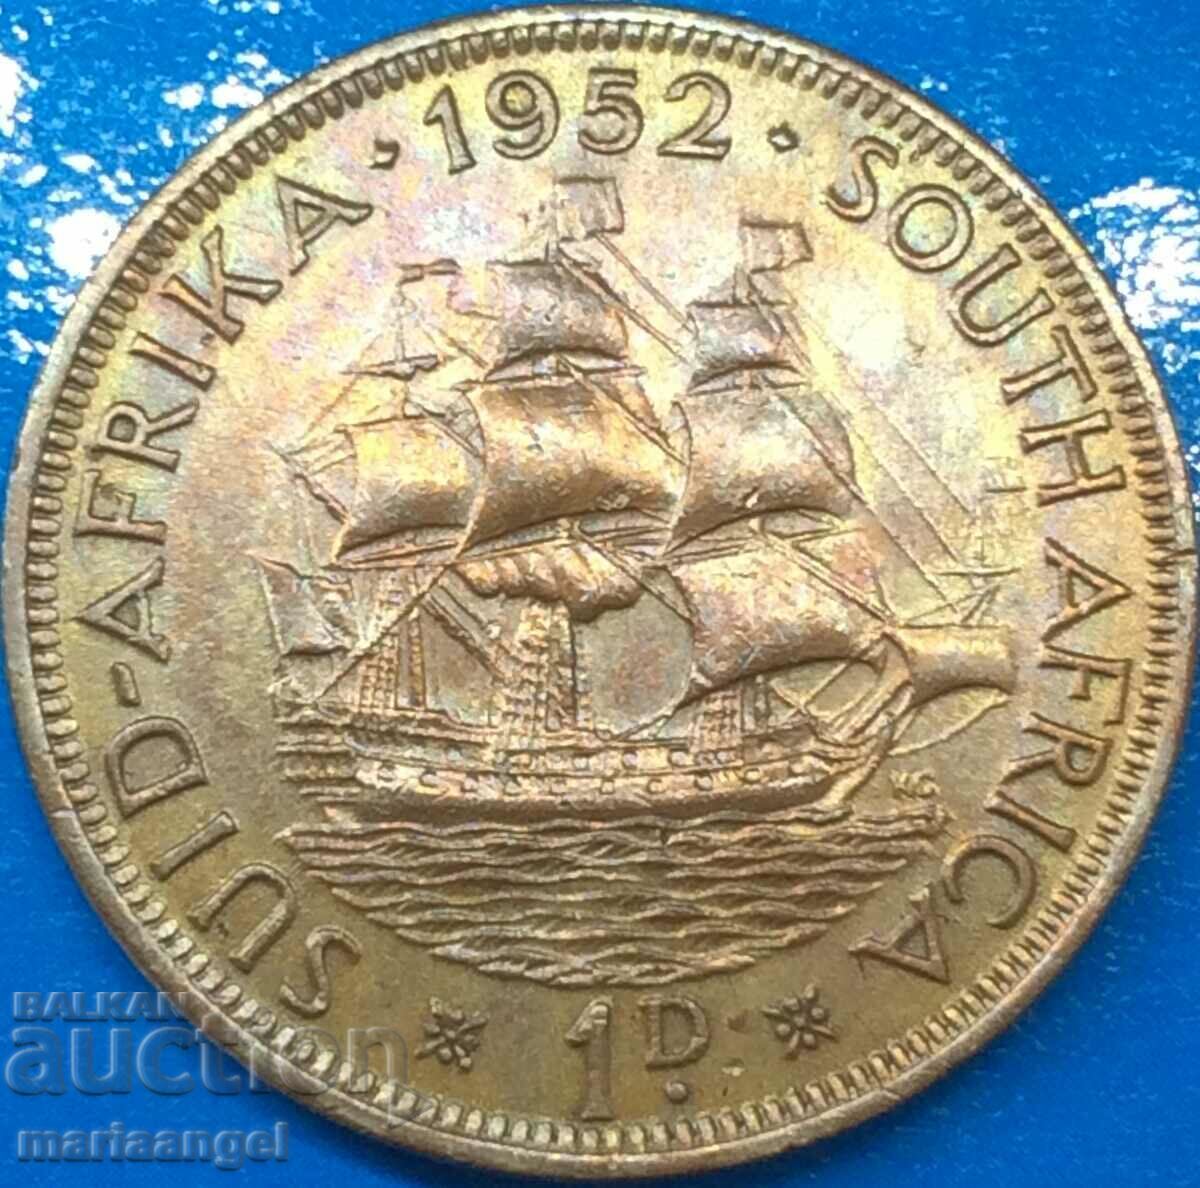 Africa de Sud 1 Penny 1952 George VI UNC 16000 buc!